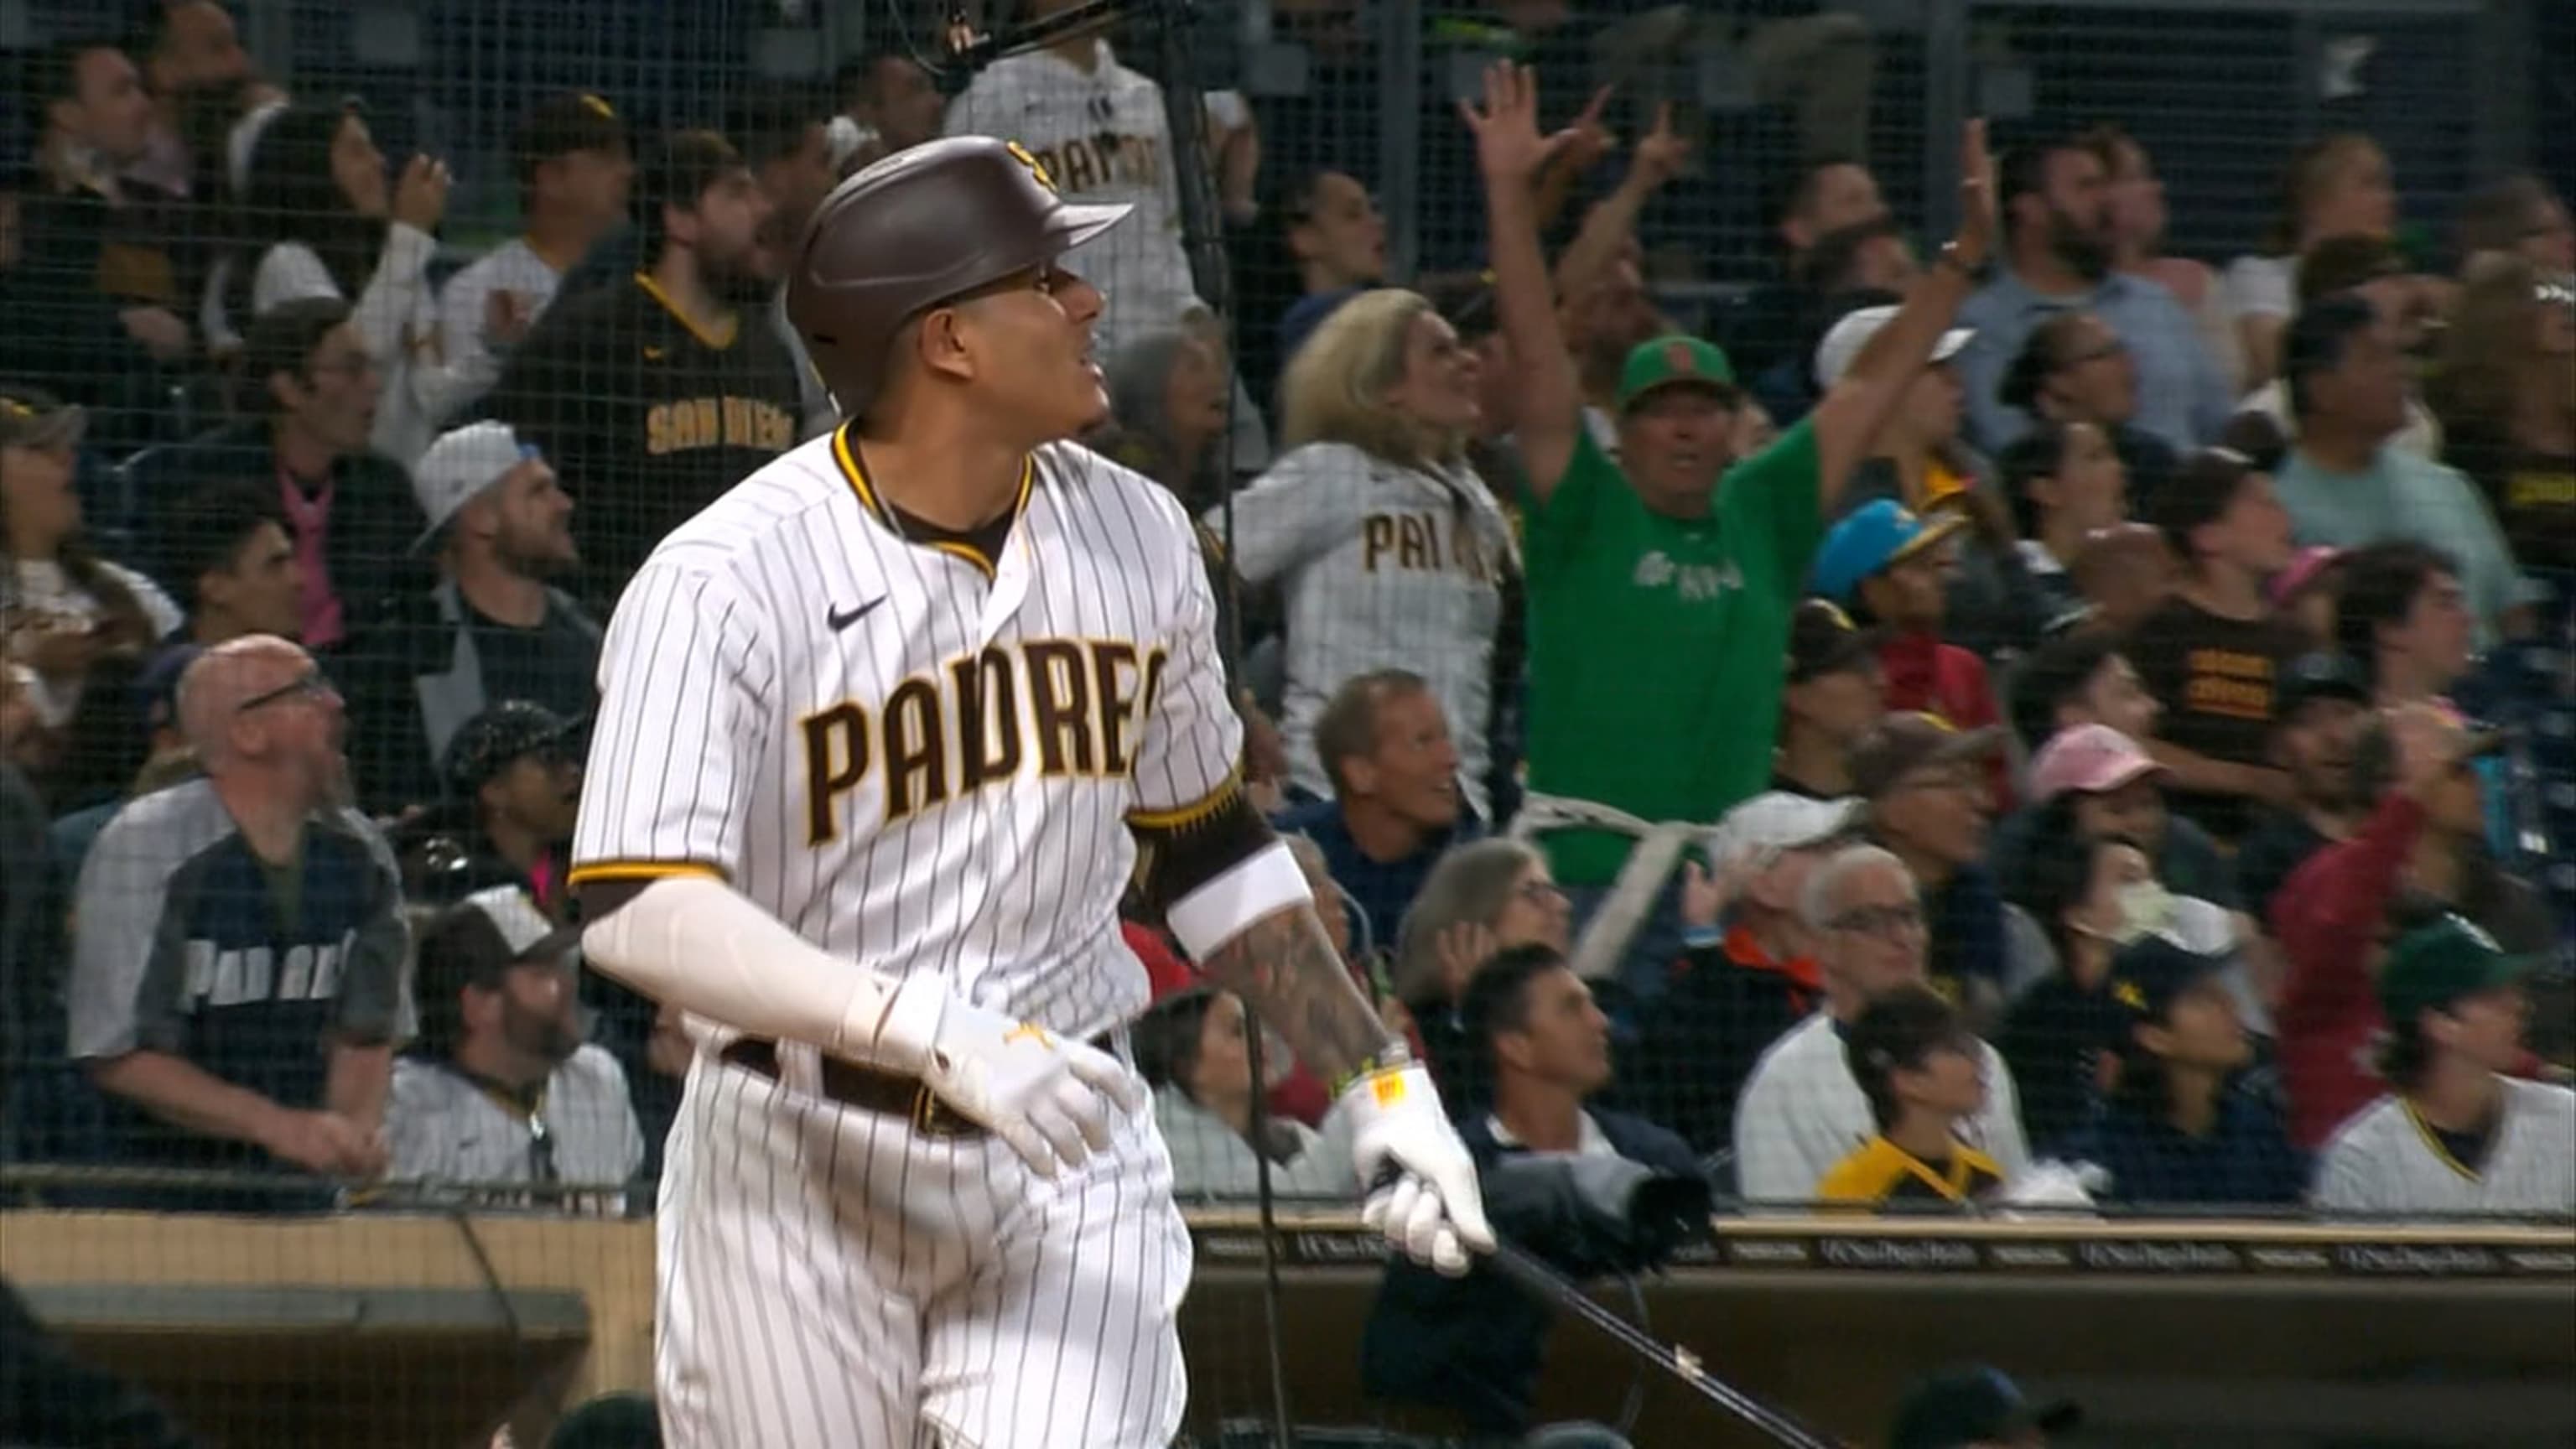 San Diego Padres - Manny *really freaking good at baseball* Machado.